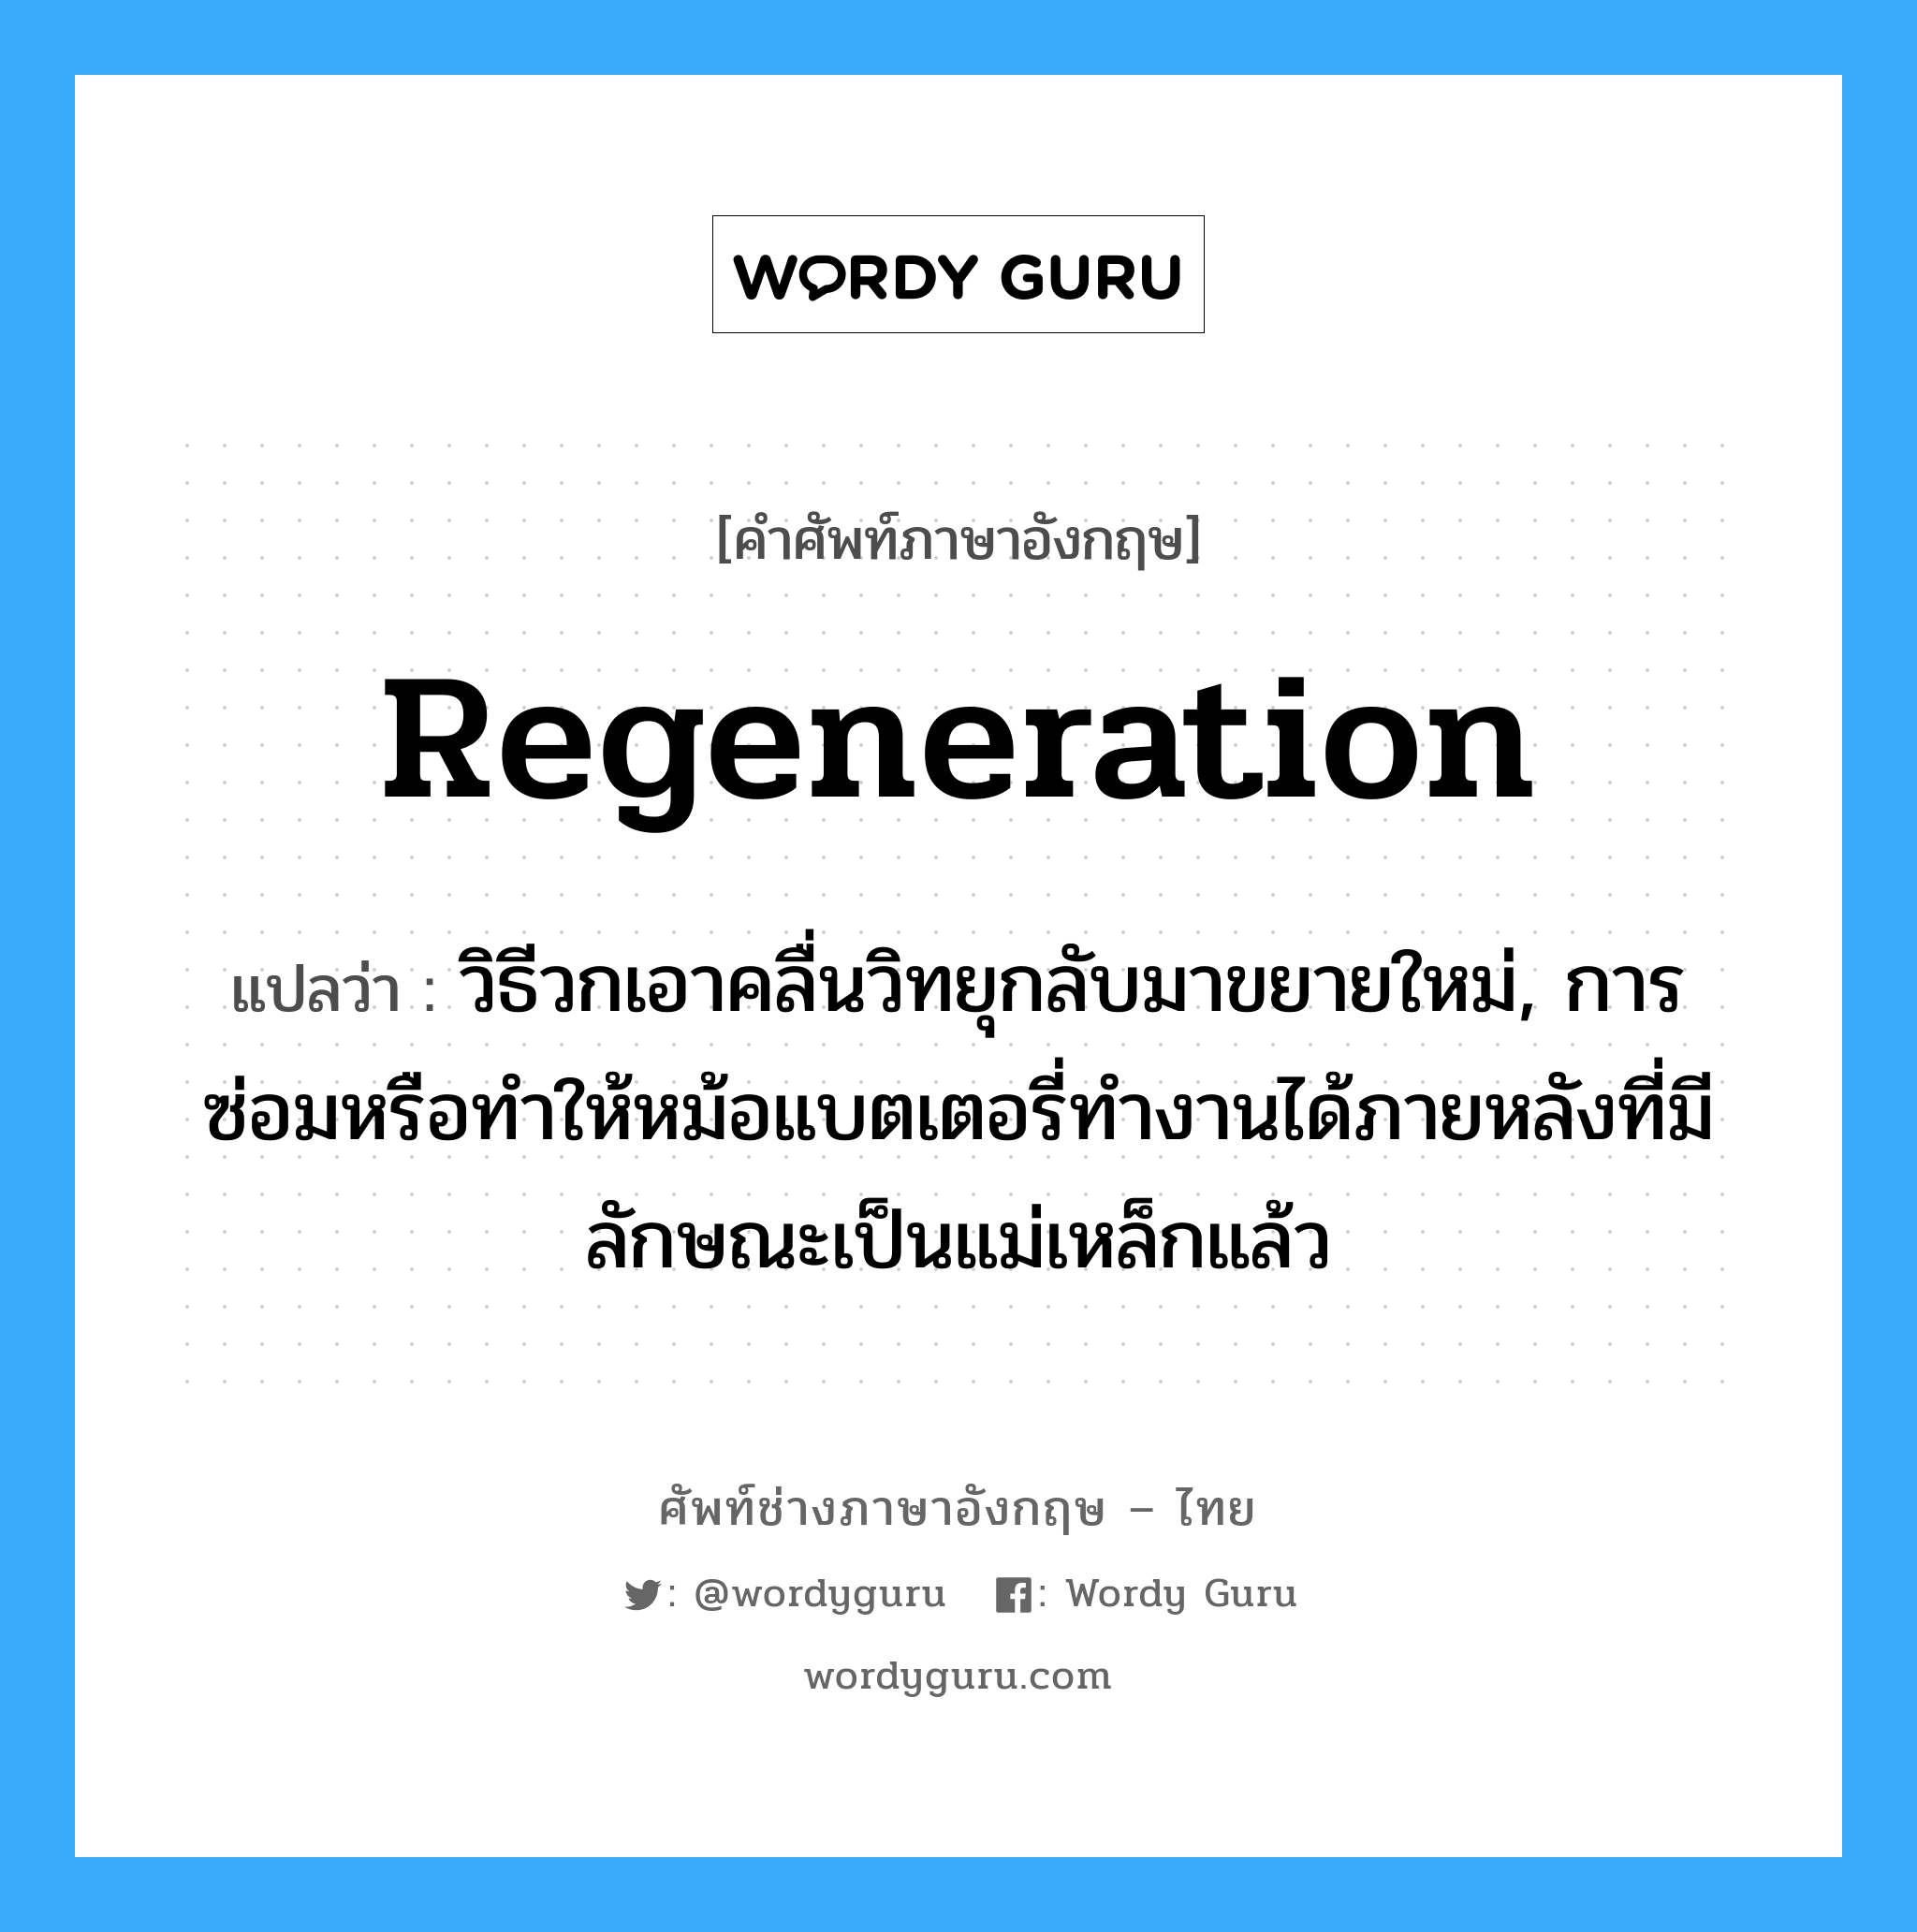 regeneration แปลว่า?, คำศัพท์ช่างภาษาอังกฤษ - ไทย regeneration คำศัพท์ภาษาอังกฤษ regeneration แปลว่า วิธีวกเอาคลื่นวิทยุกลับมาขยายใหม่, การซ่อมหรือทำให้หม้อแบตเตอรี่ทำงานได้ภายหลังที่มีลักษณะเป็นแม่เหล็กแล้ว